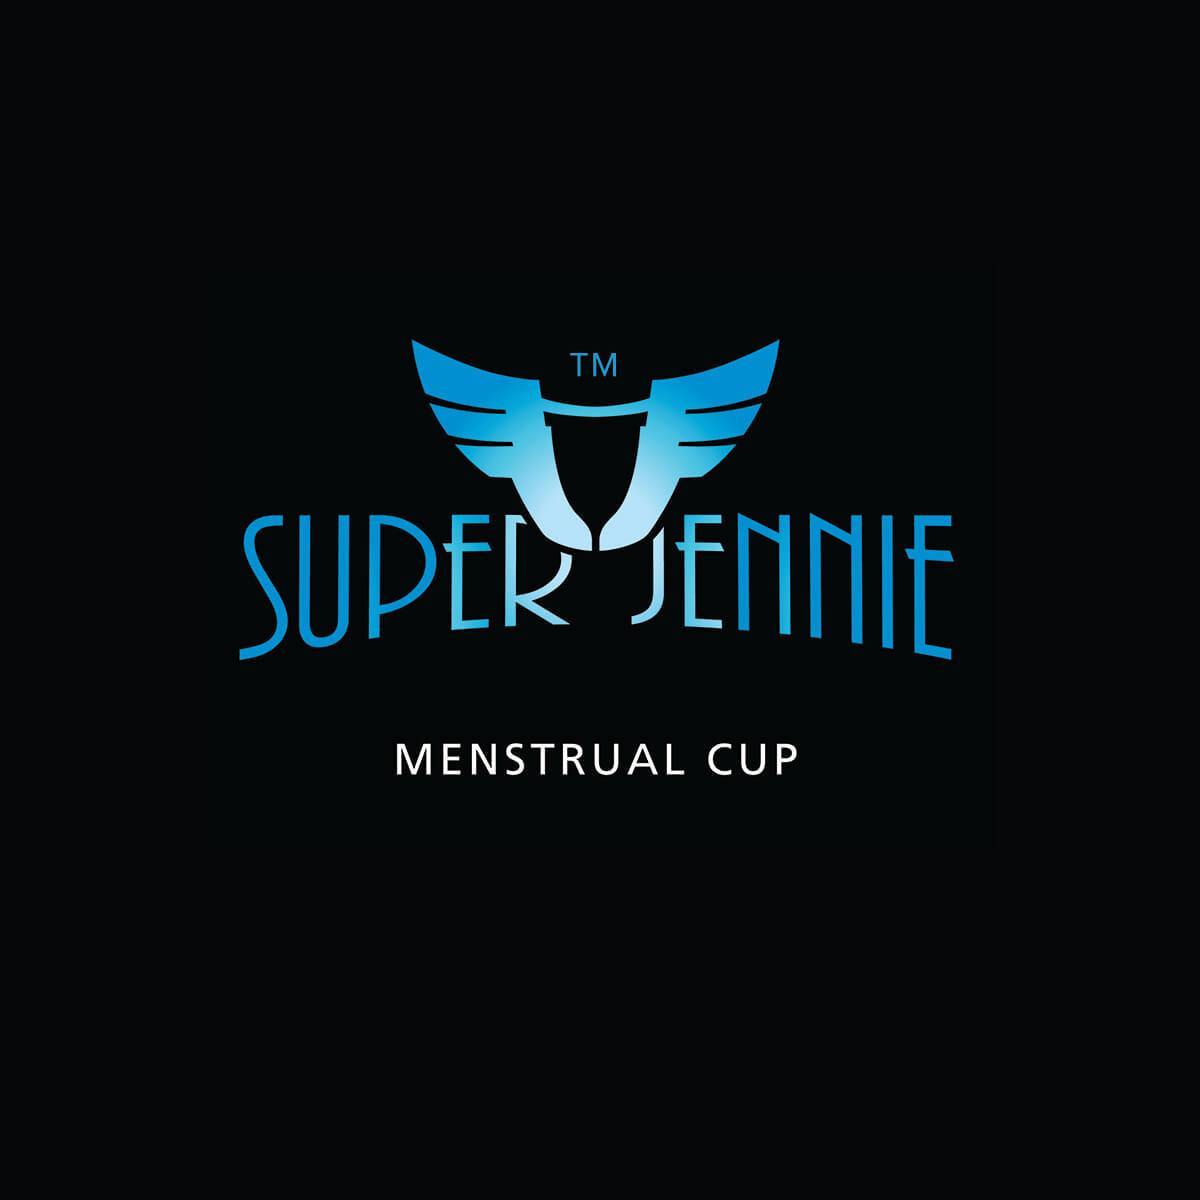 2 x Super Jennie Menstrual Cup